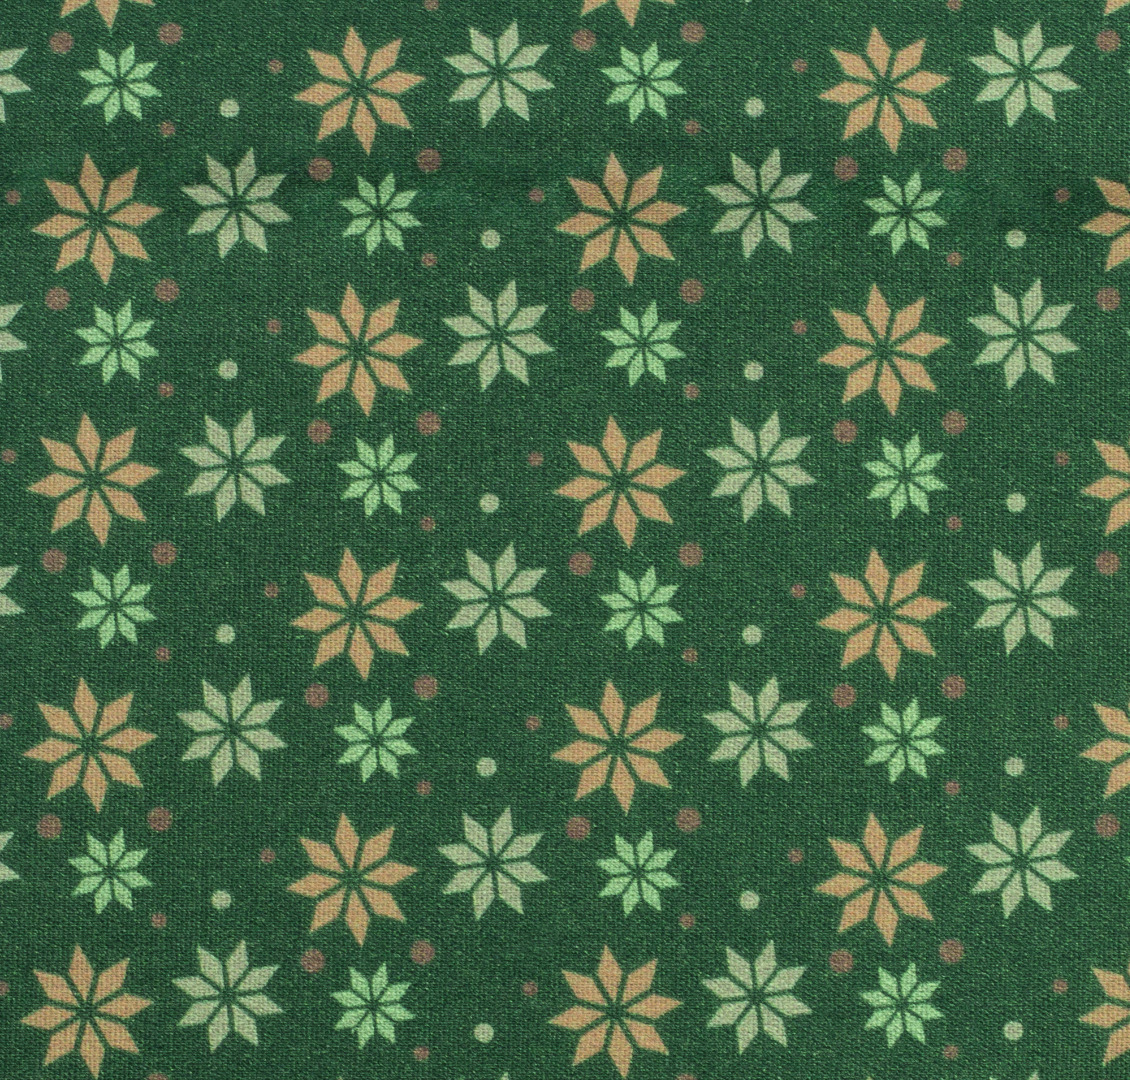 Baumwolle Sterne grün Weihnachtsstoff